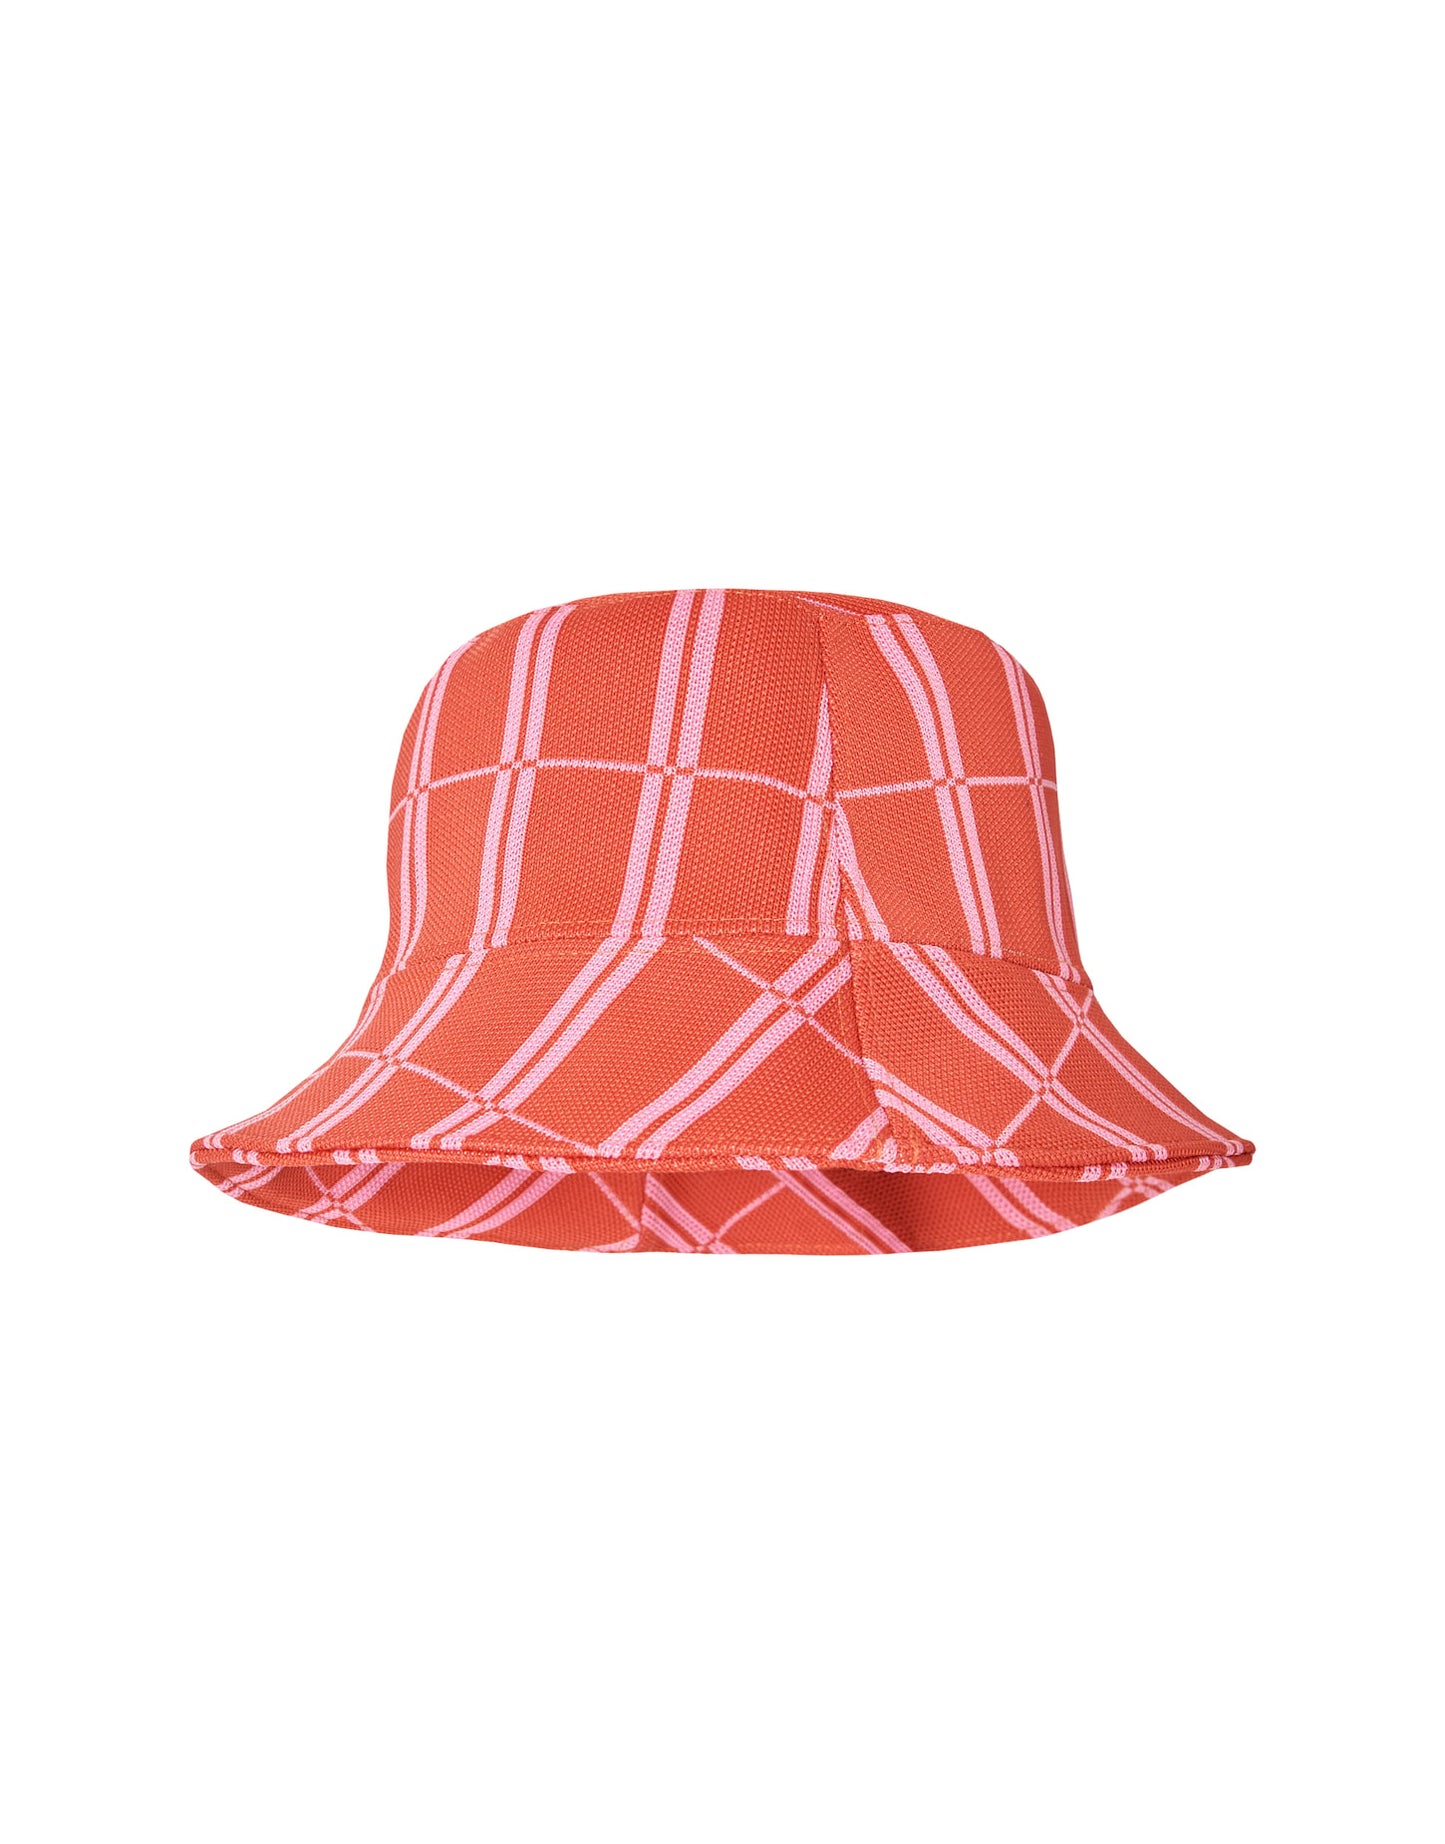 Barklie hat (Scarlet)